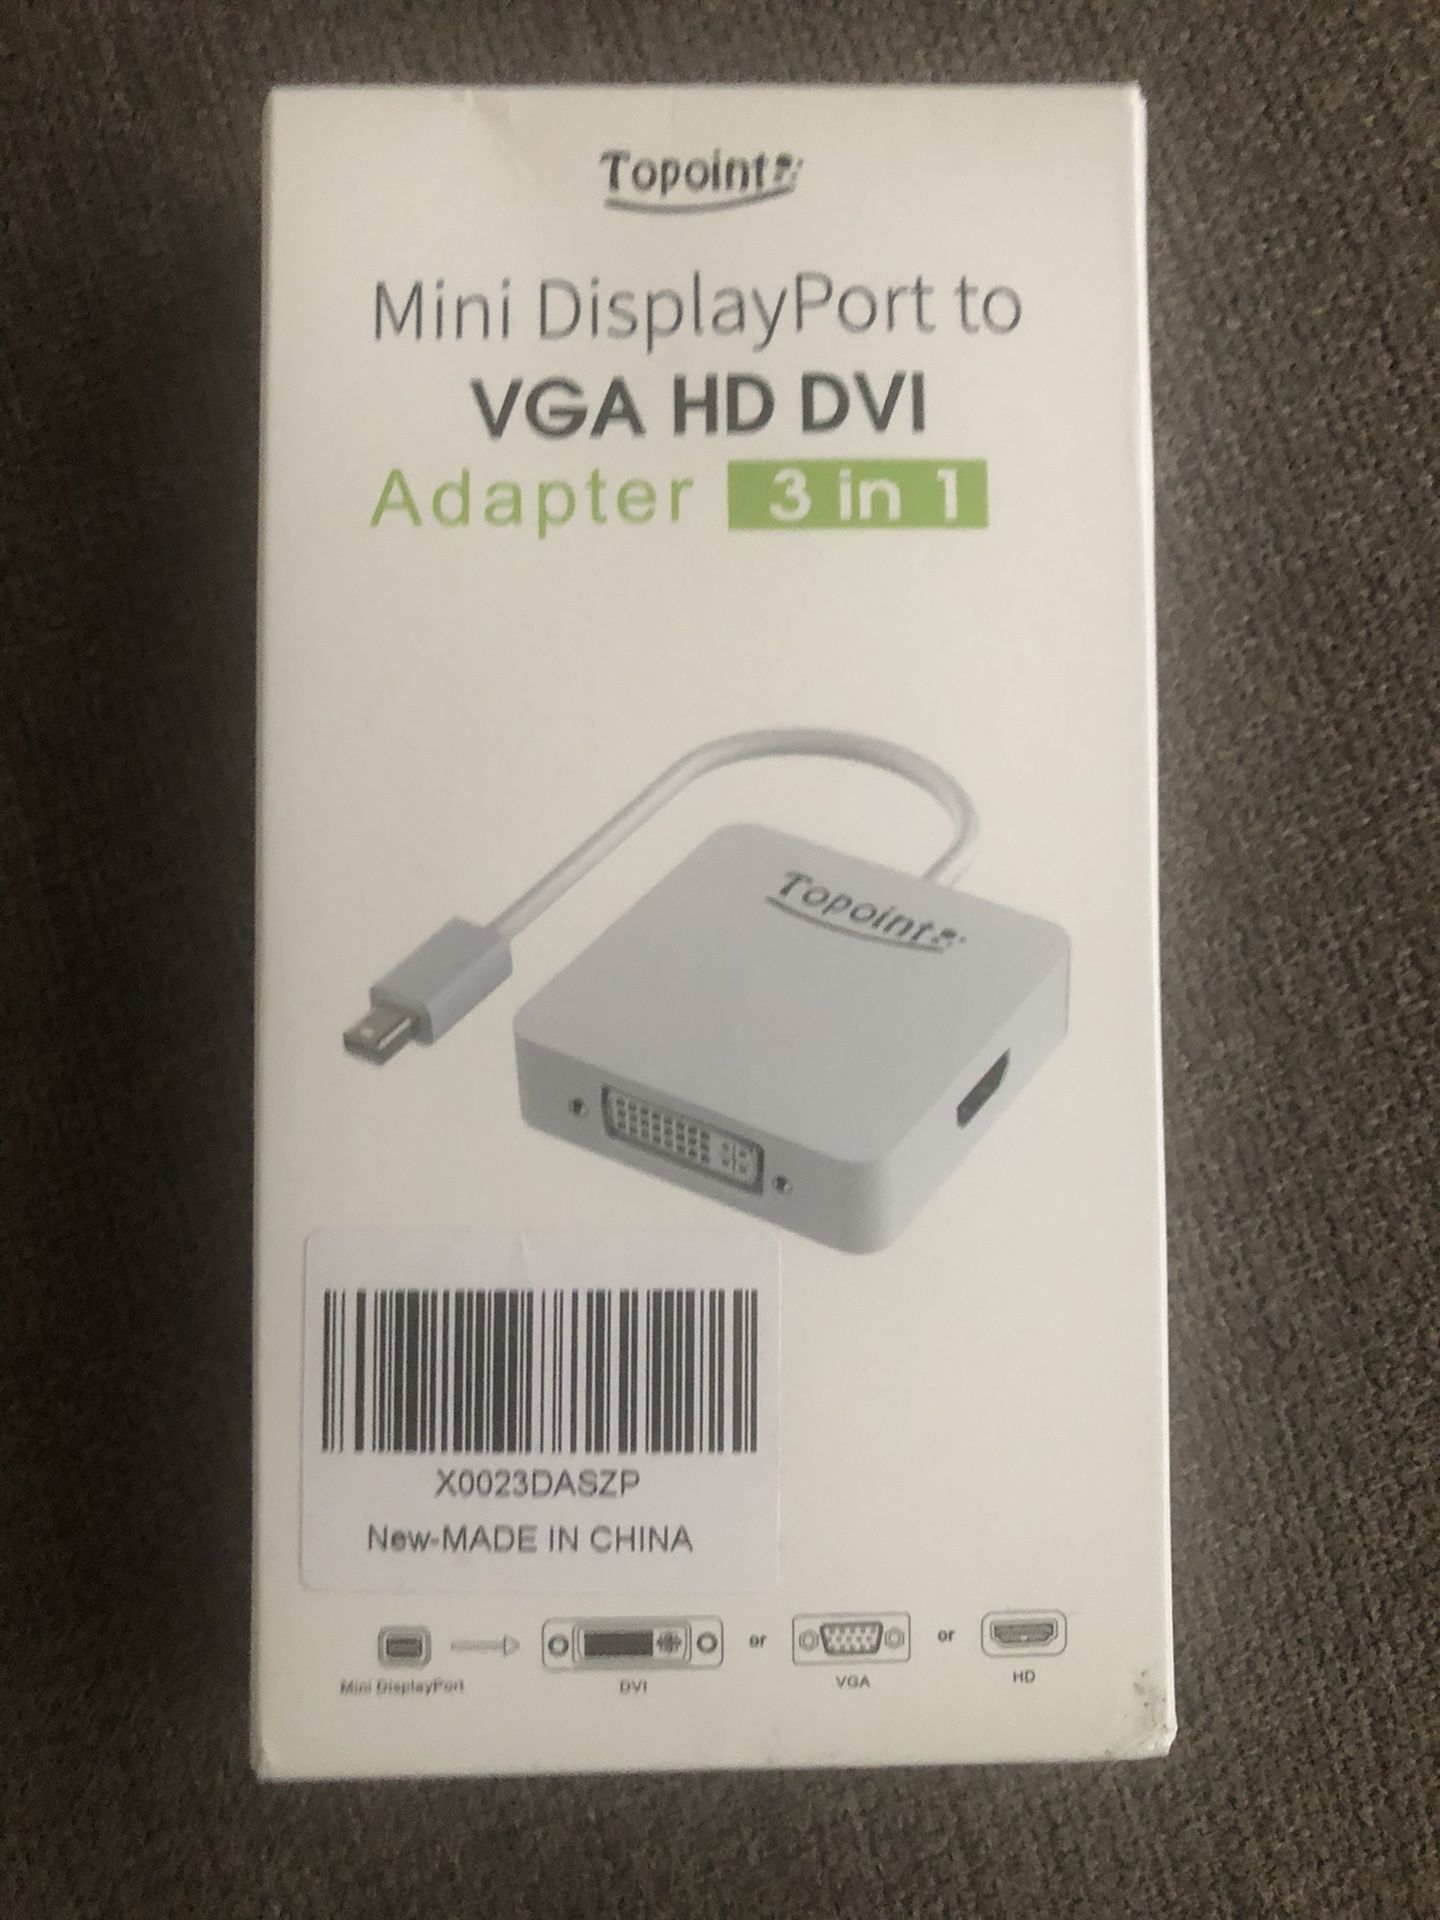 Mini DisplayPort to VGA HD DVI